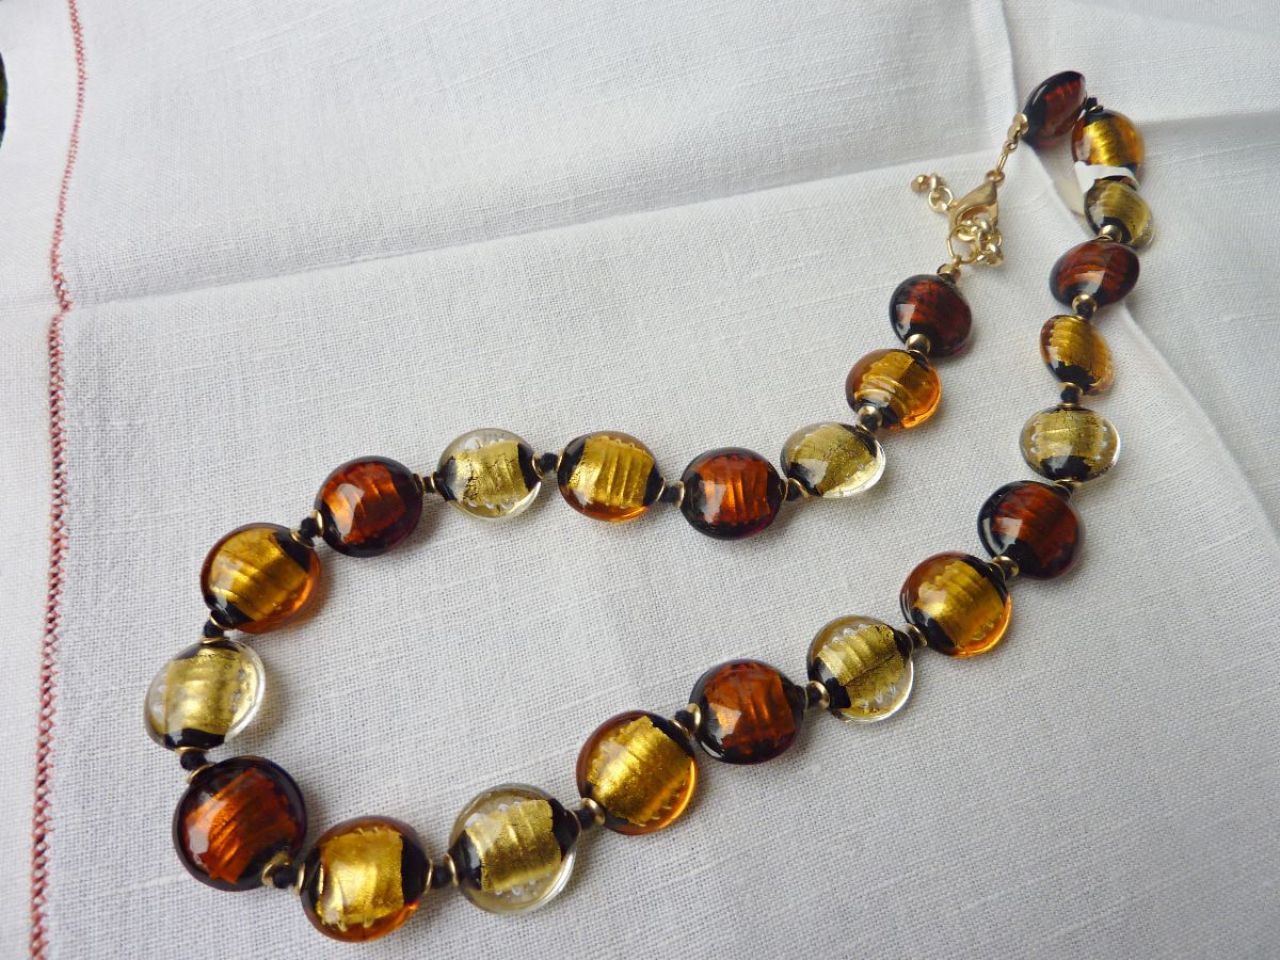 collier en perle de verre de Murano , fait main, incrustation de feuille d'or sur une base de verre noir recouverte de cristal , couleur transparent , topaze clair et foncé